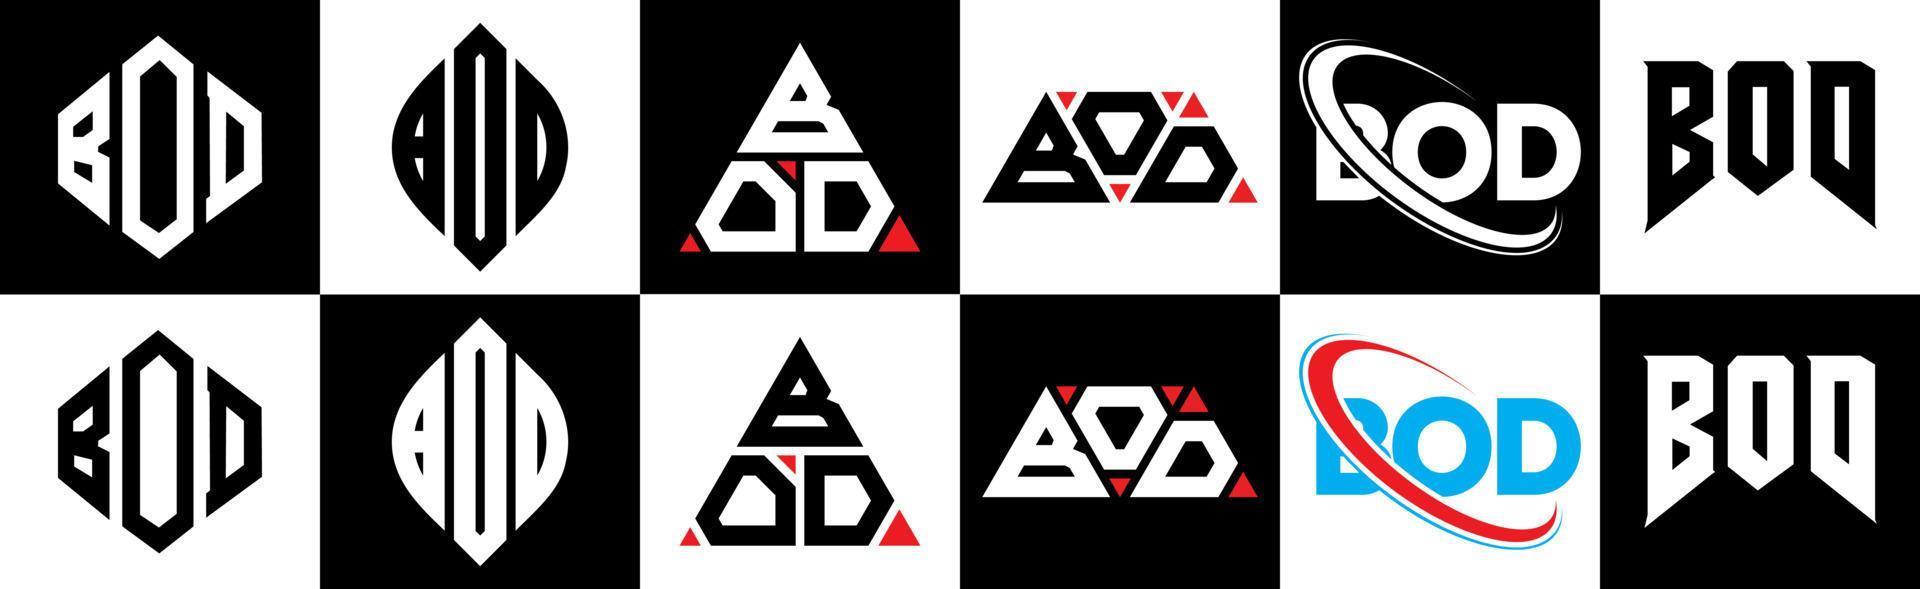 création de logo de lettre bod en six styles. bod polygone, cercle, triangle, hexagone, style plat et simple avec logo de lettre de variation de couleur noir et blanc dans un plan de travail. bod logo minimaliste et classique vecteur